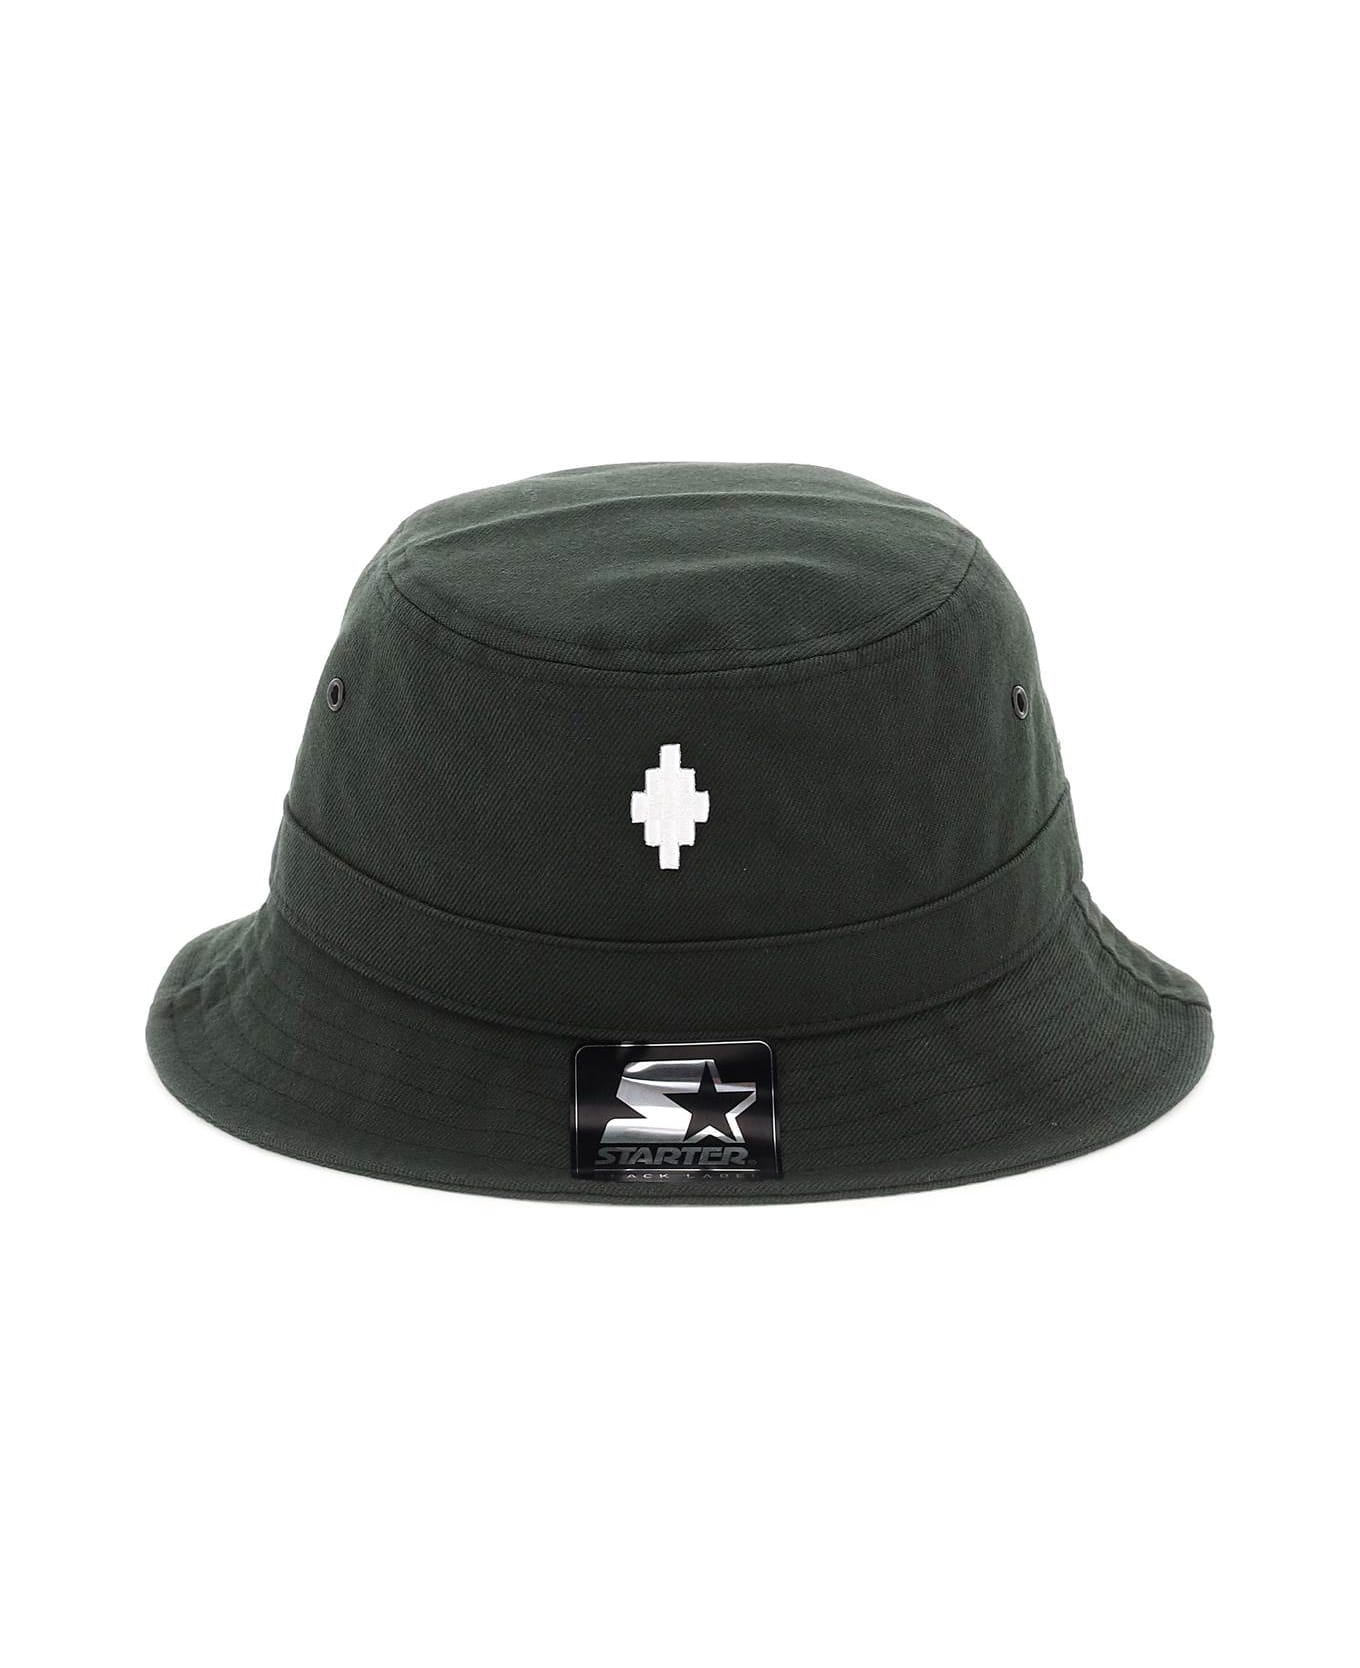 Marcelo Burlon Starter Cross Bucket Hat - Black/white 帽子